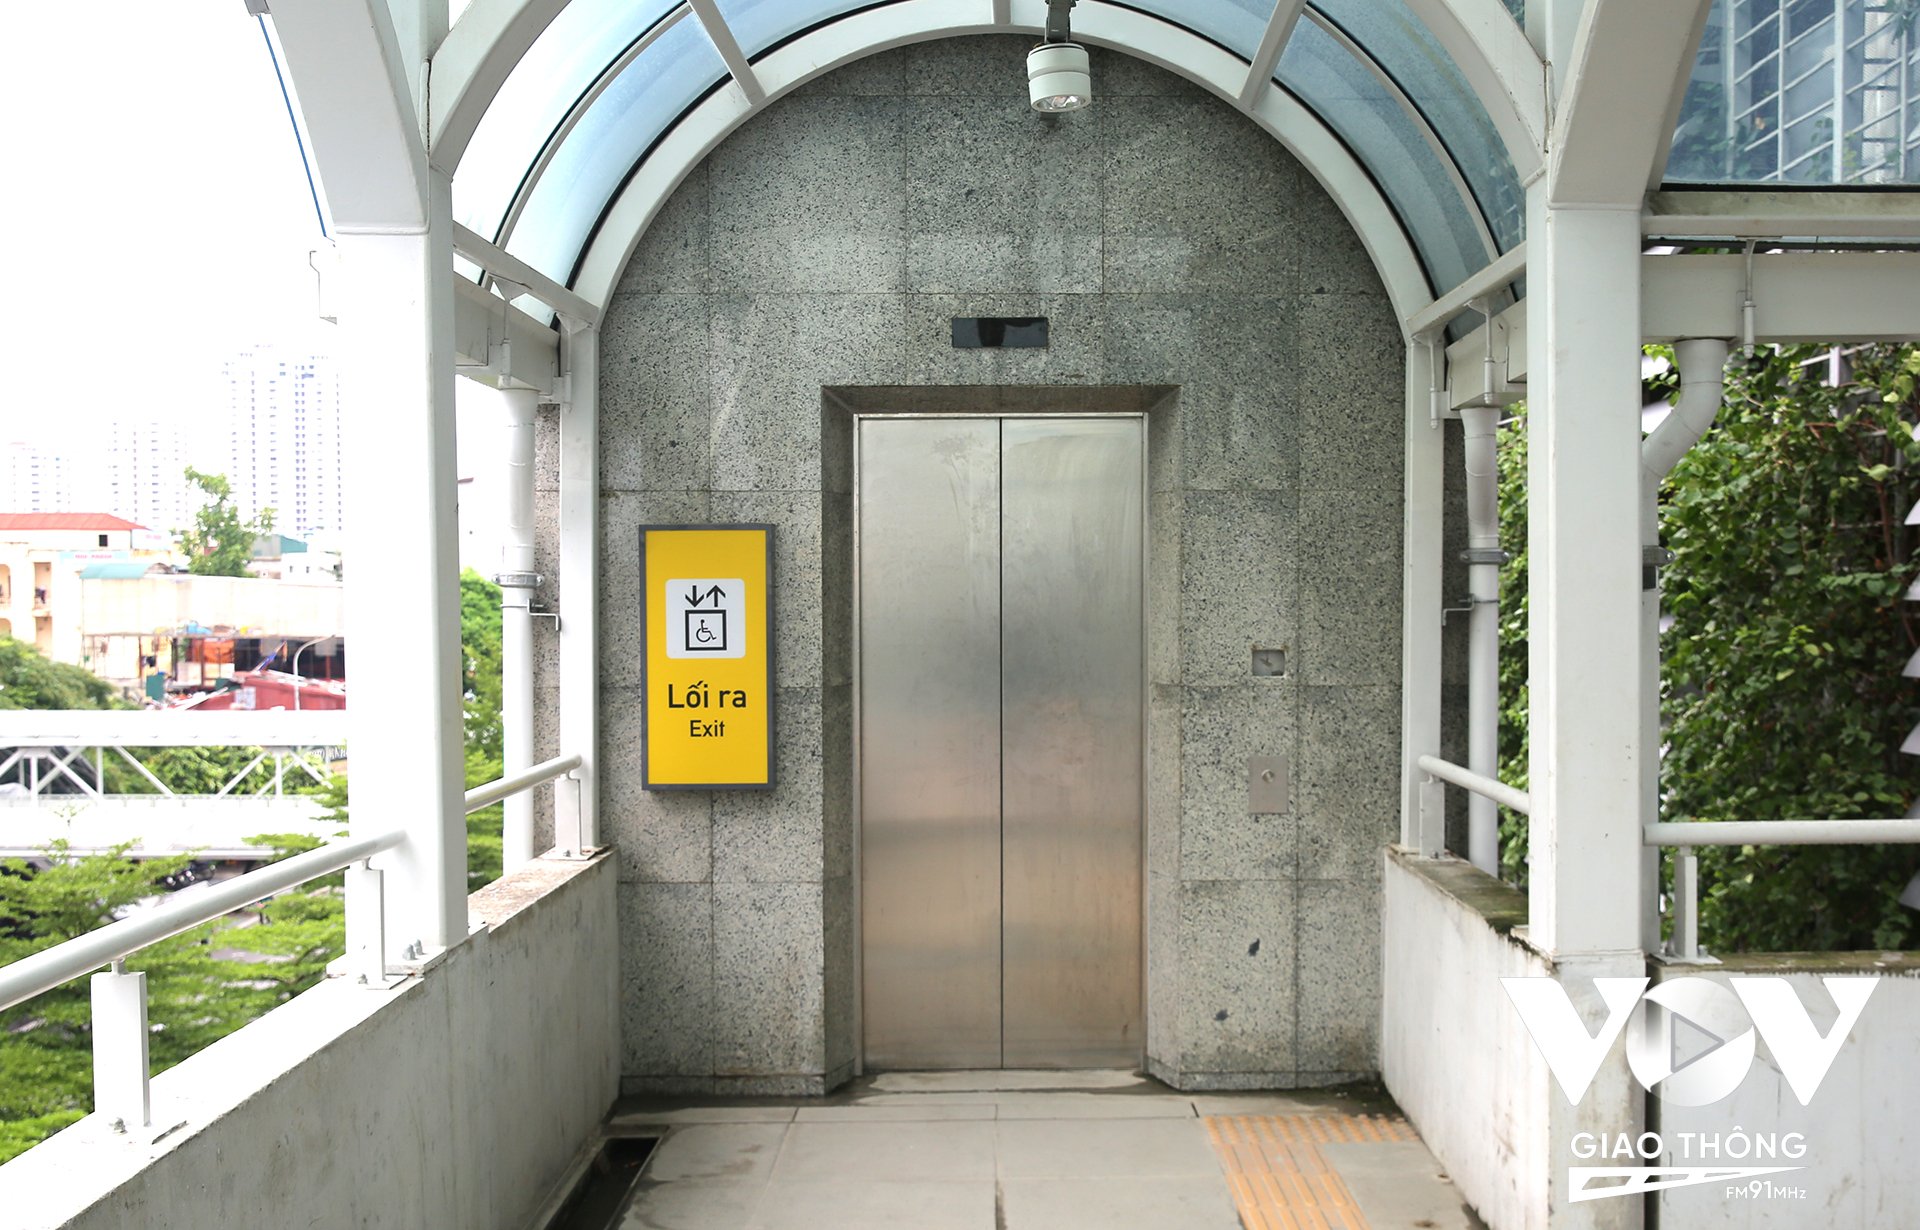 Tại các ga đều có thang máy dành cho người cao tuổi, khuyết tật di chuyển